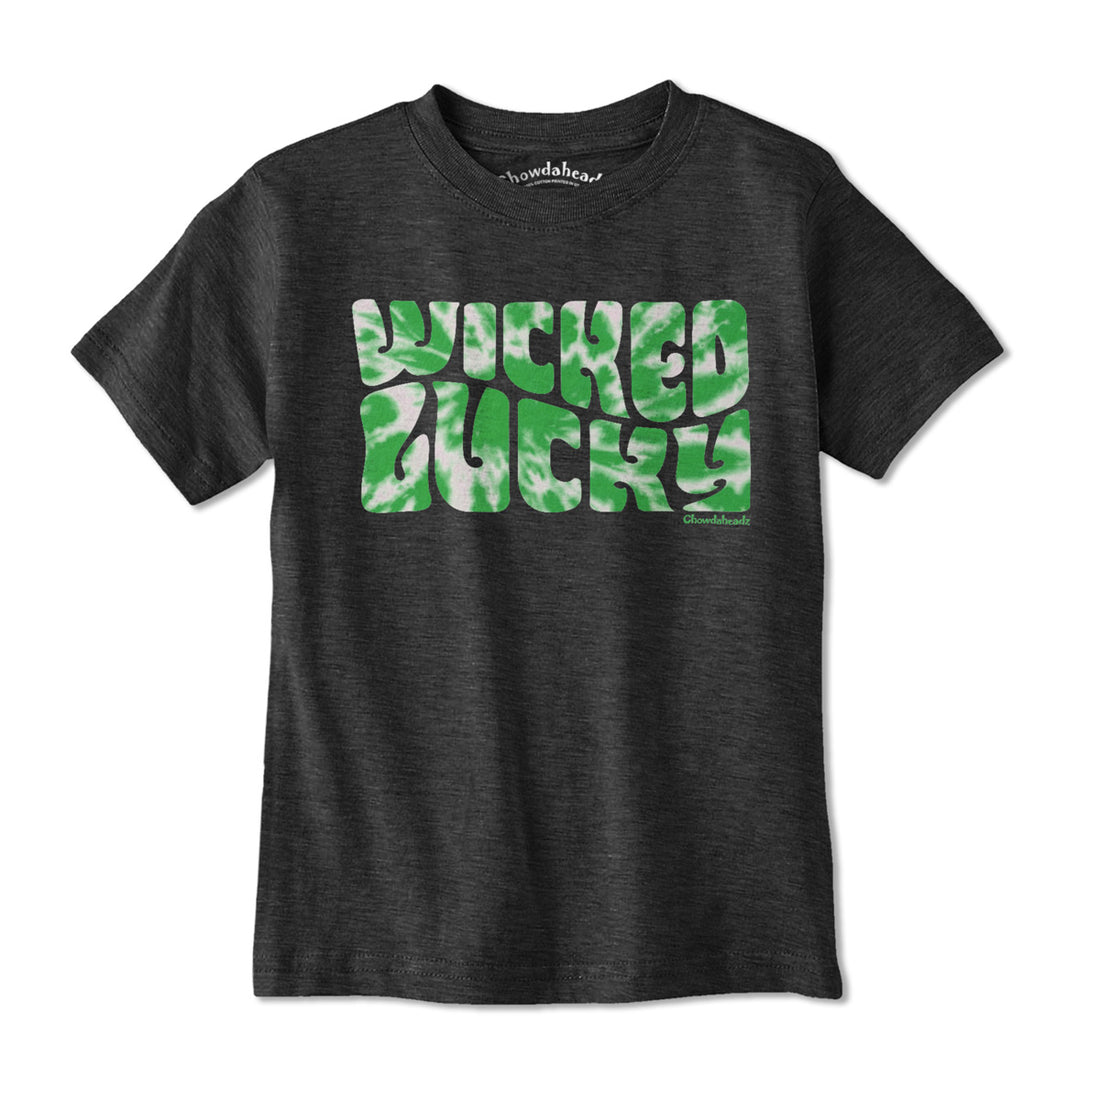 Wicked Lucky Tie Dye Youth T-Shirt - Chowdaheadz